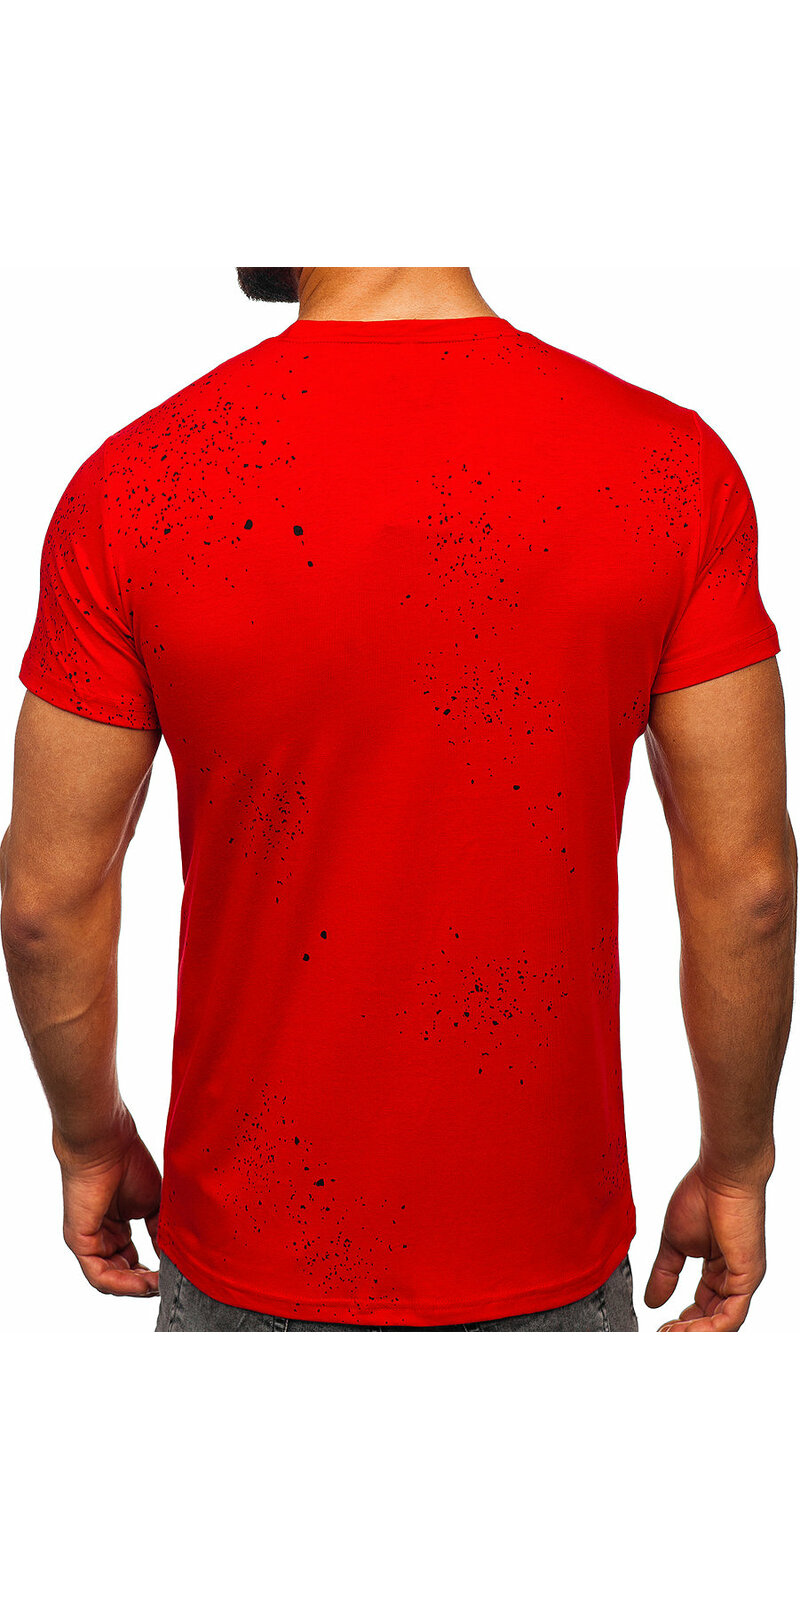 Červené pánske tričko s potlačou "Designtrend" Červená